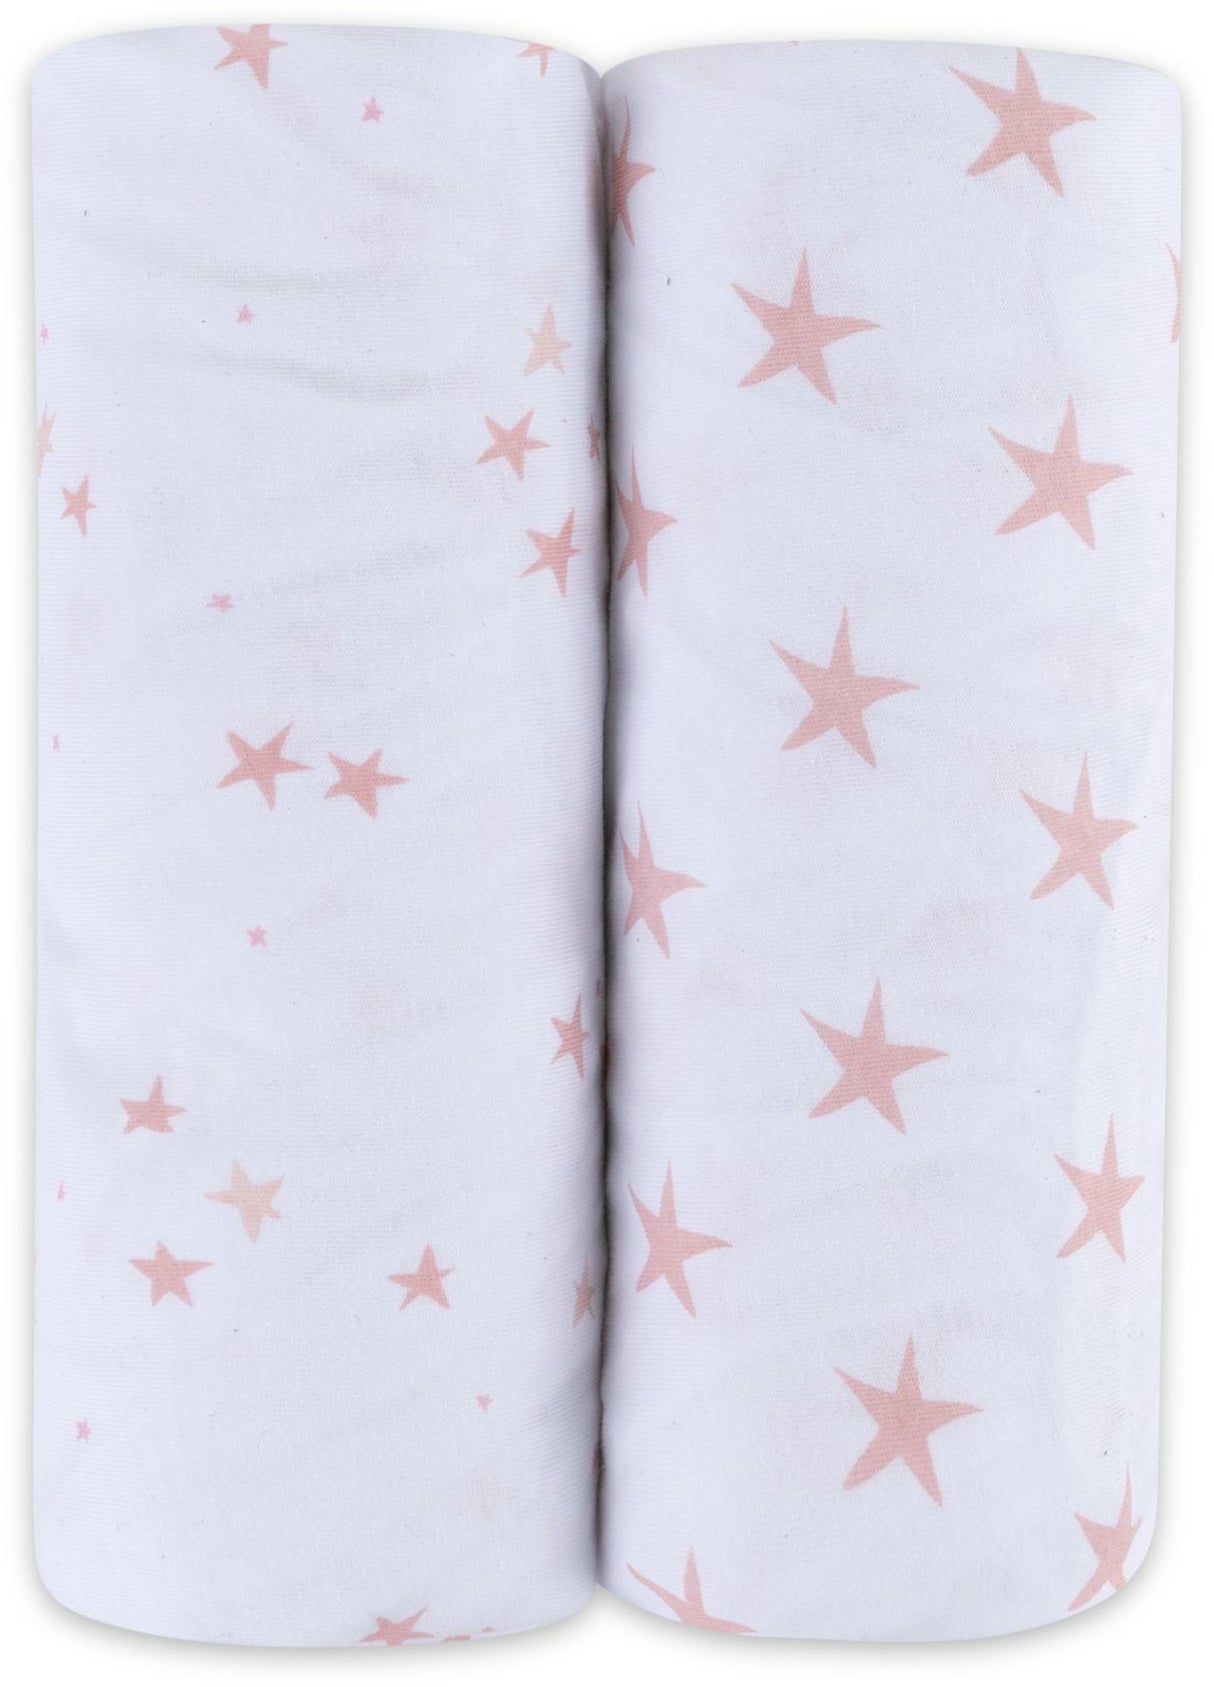 Ely's & Co Stars Crib Sheet 2 Pack